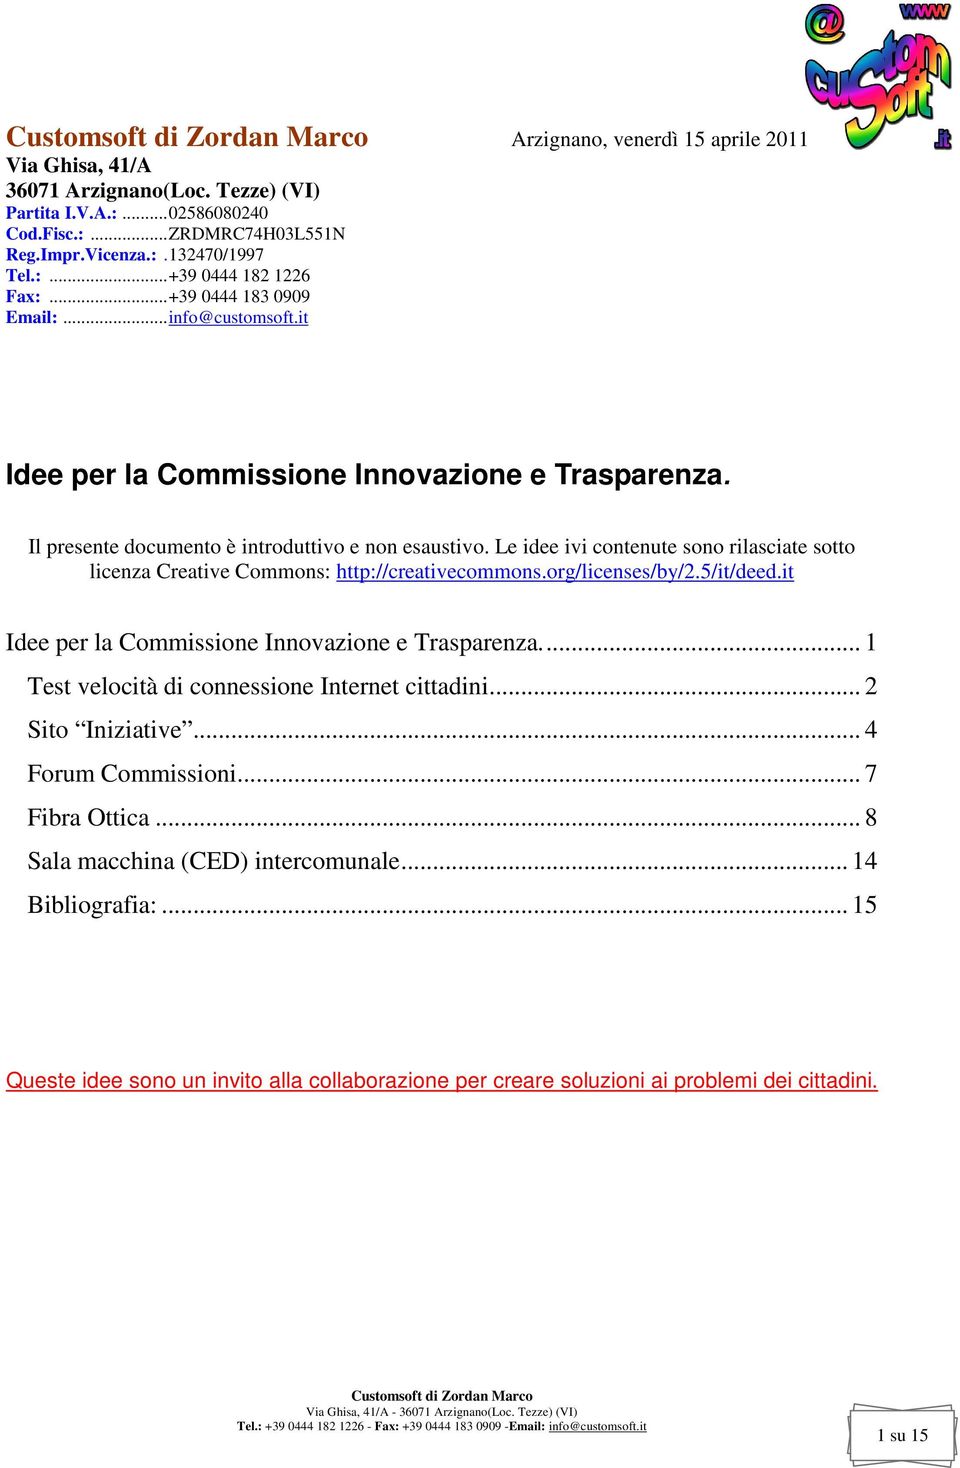 Le idee ivi contenute sono rilasciate sotto licenza Creative Commons: http://creativecommons.org/licenses/by/2.5/it/deed.it Idee per la Commissione Innovazione e Trasparenza.